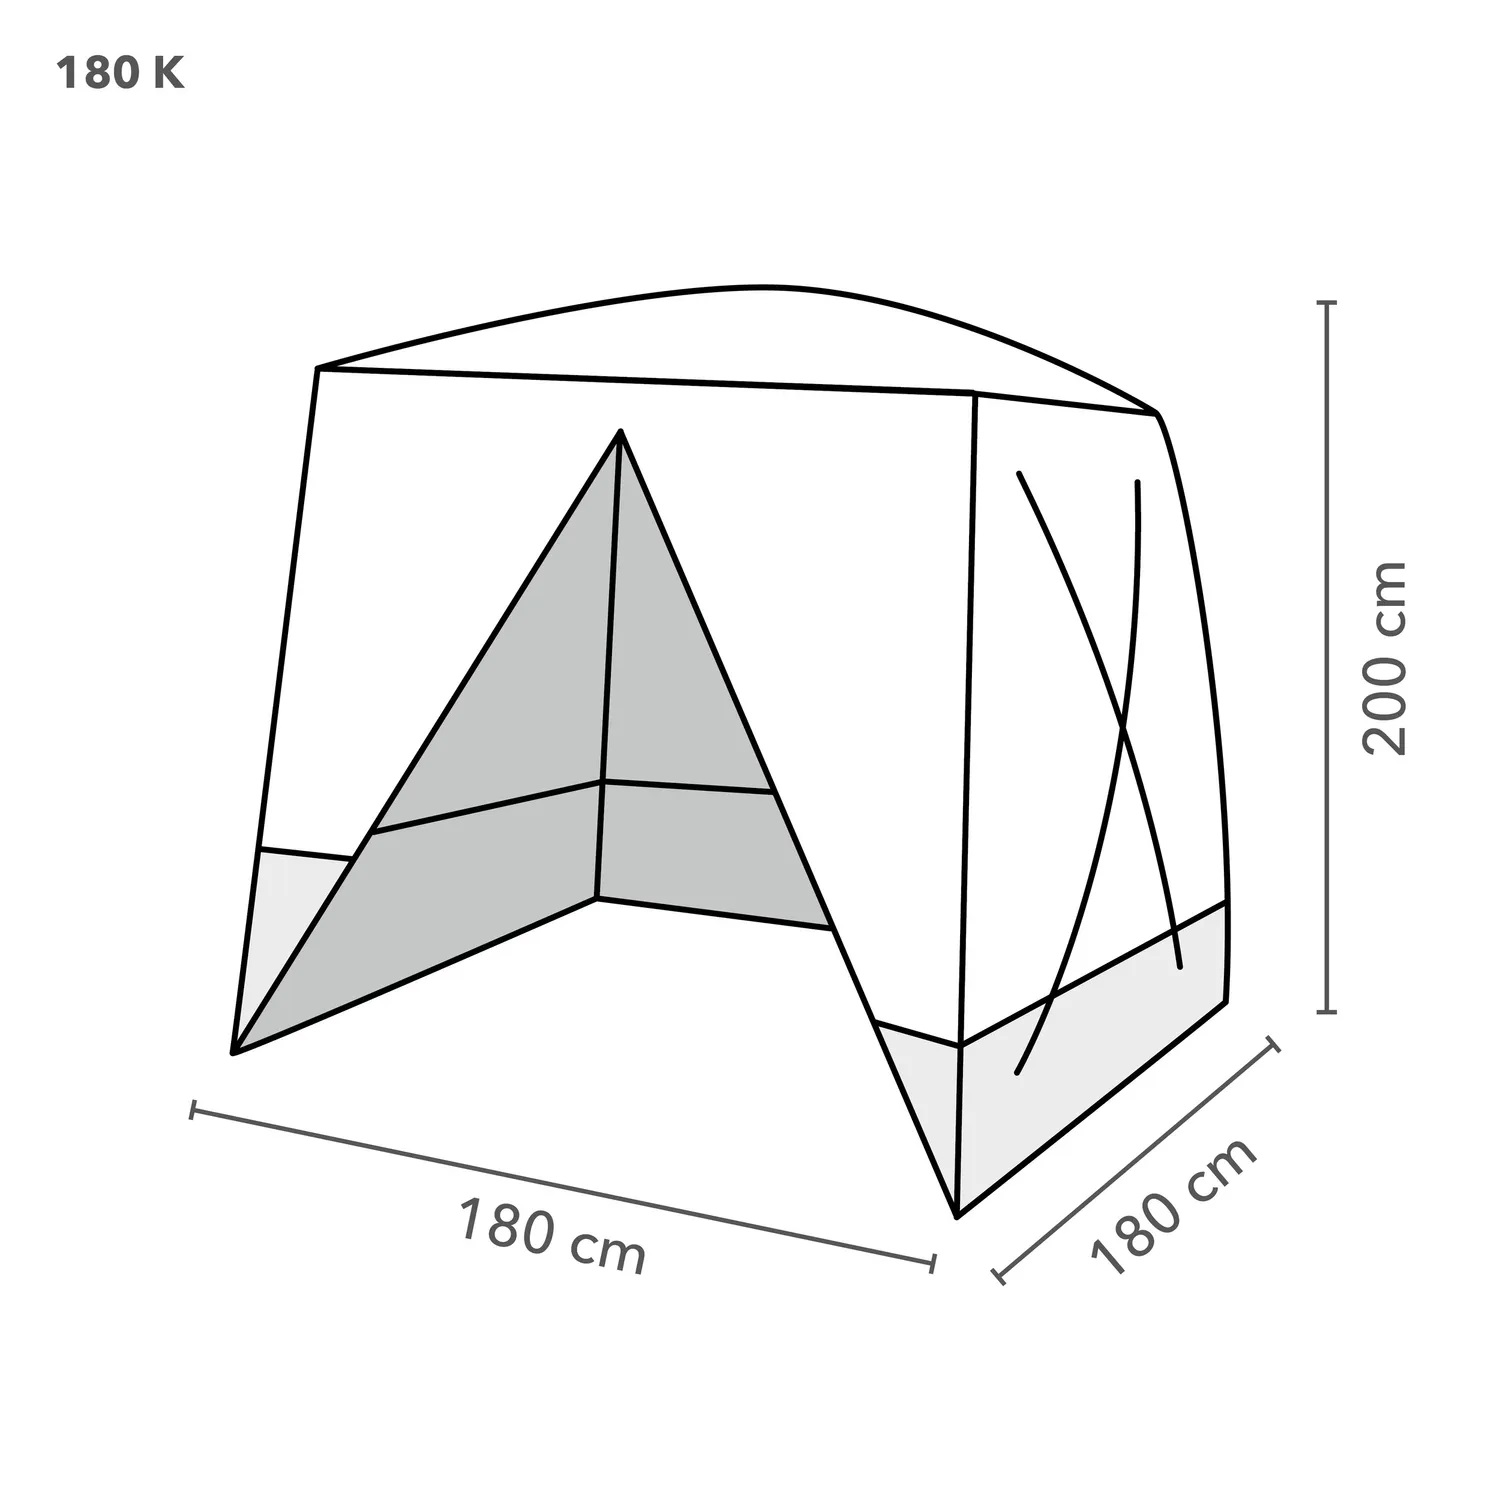 disegno tecnico tenda180k